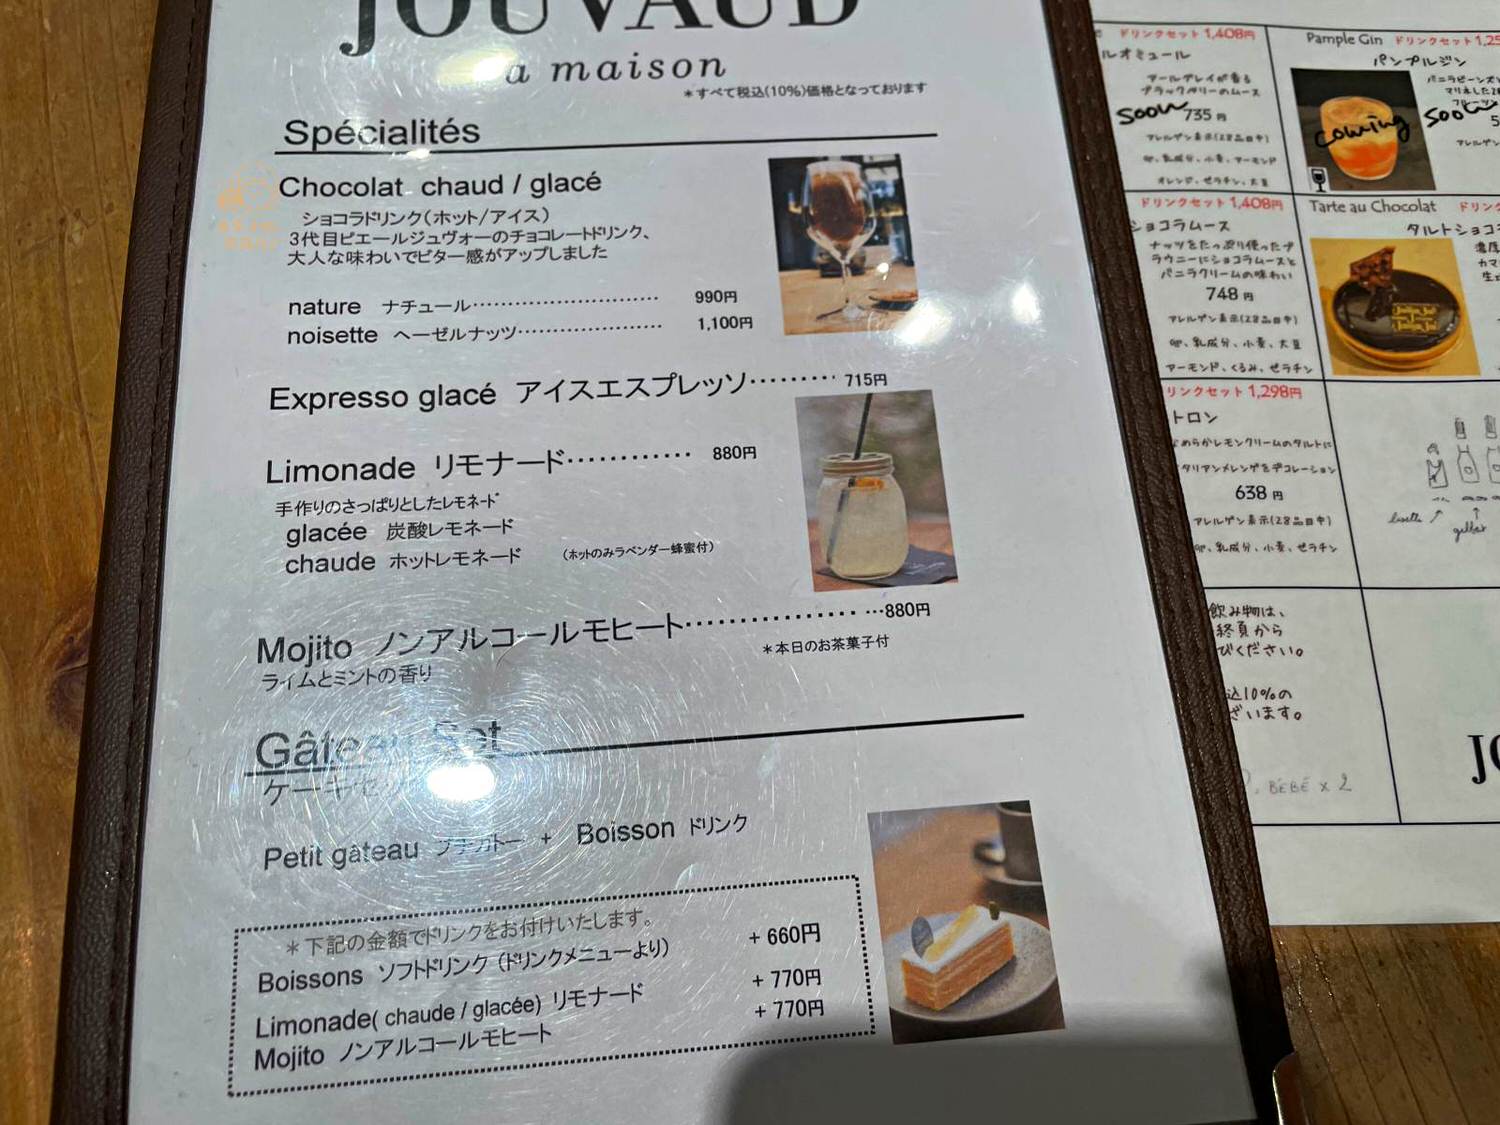 京都美食 | La maison JOUVAUD 法式甜點菜單